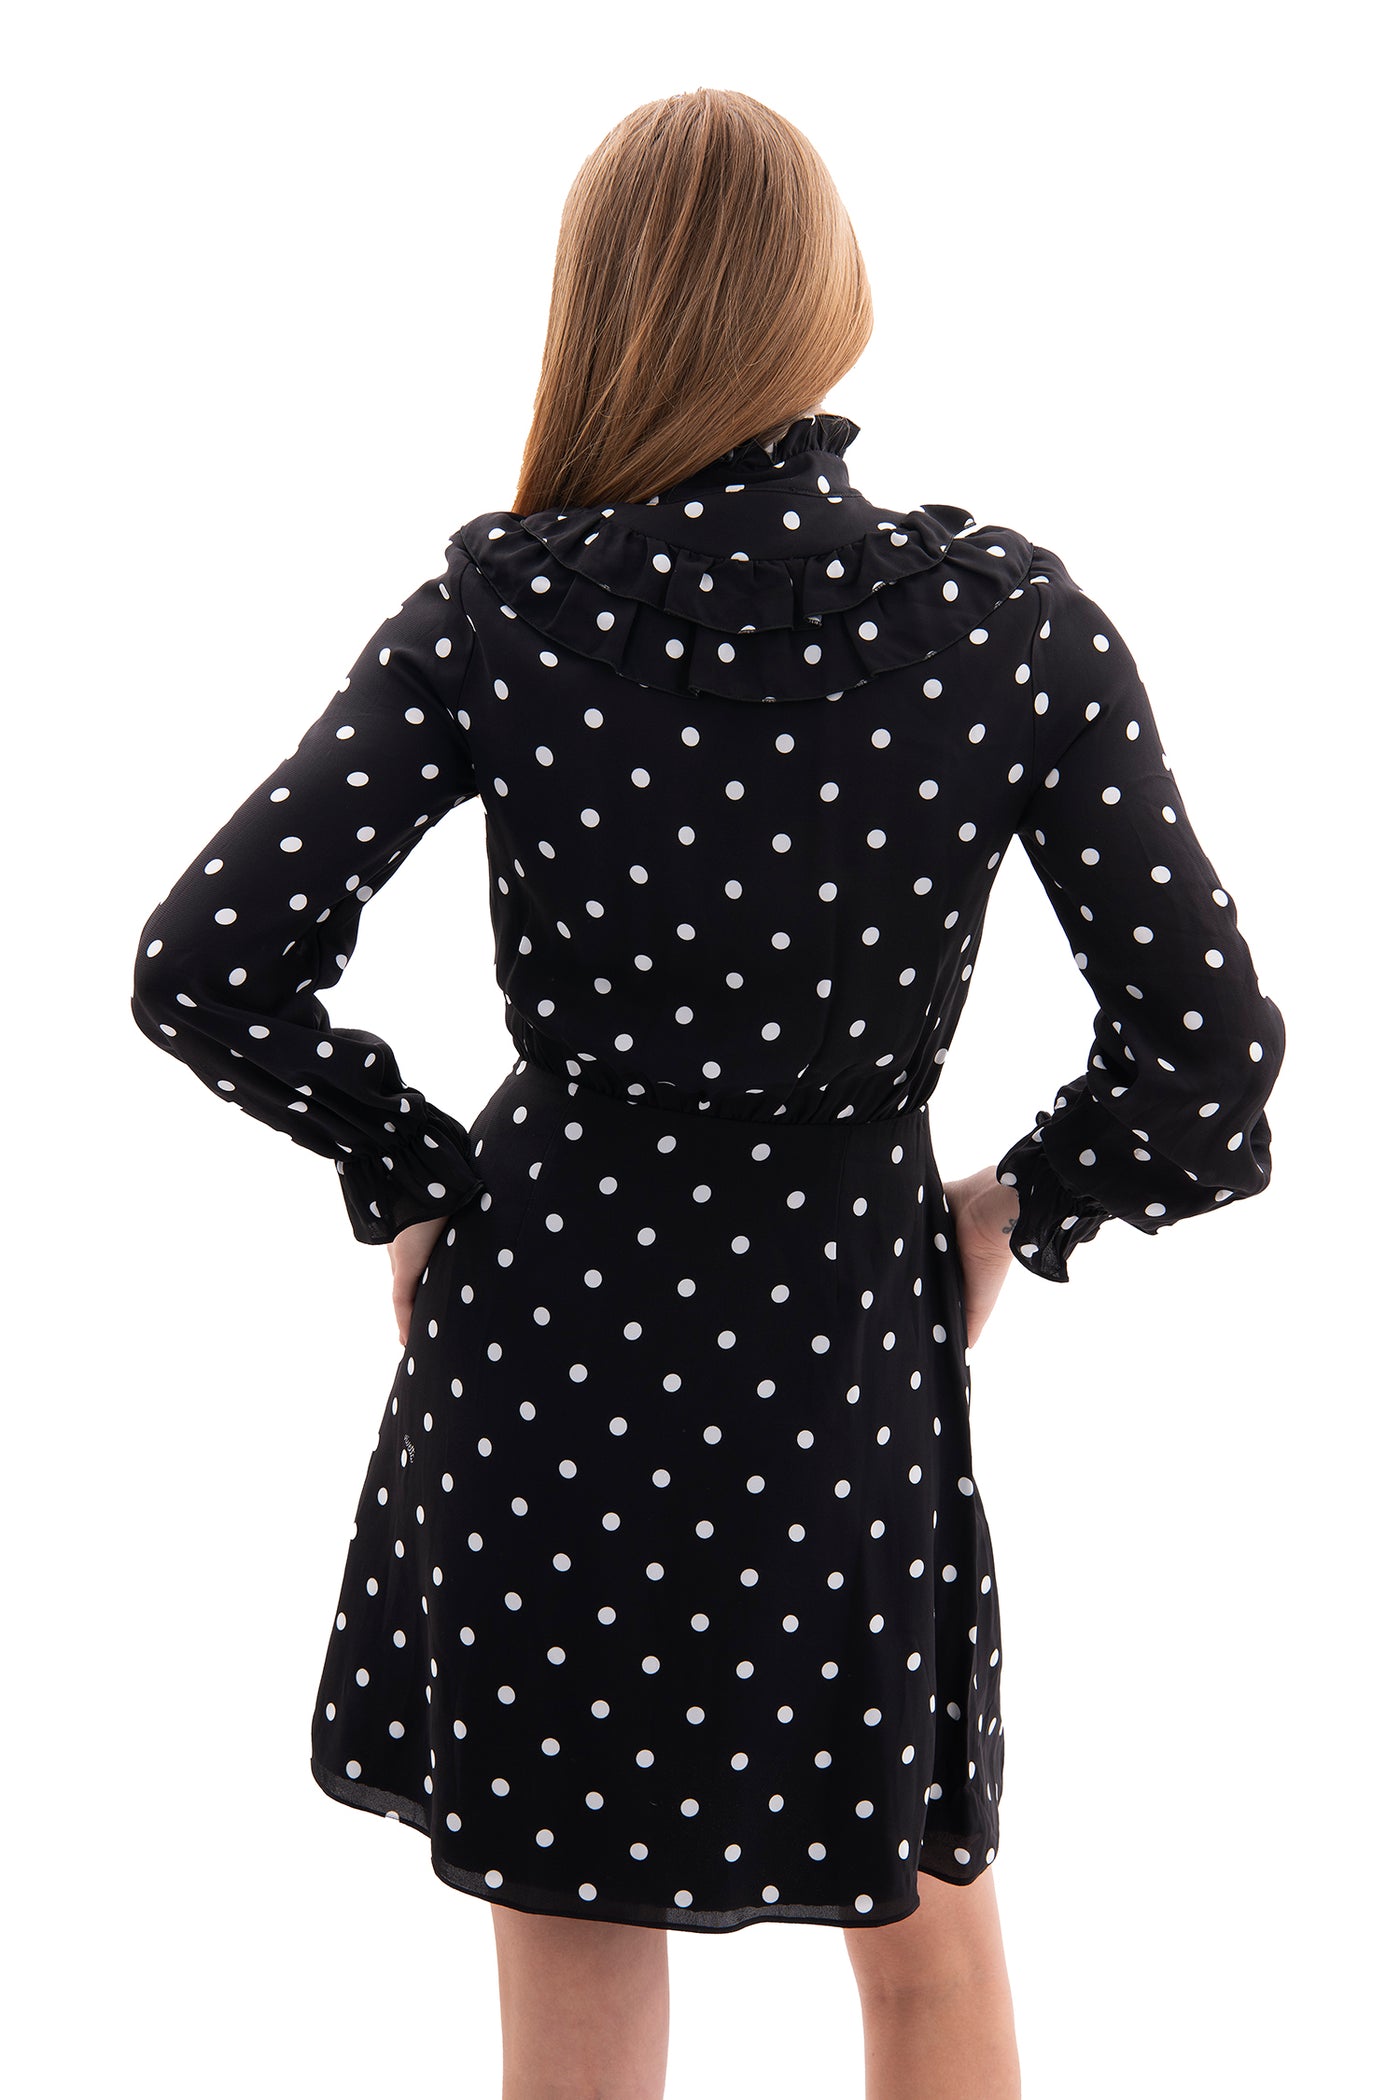 Vivetta black and white polka dot dress